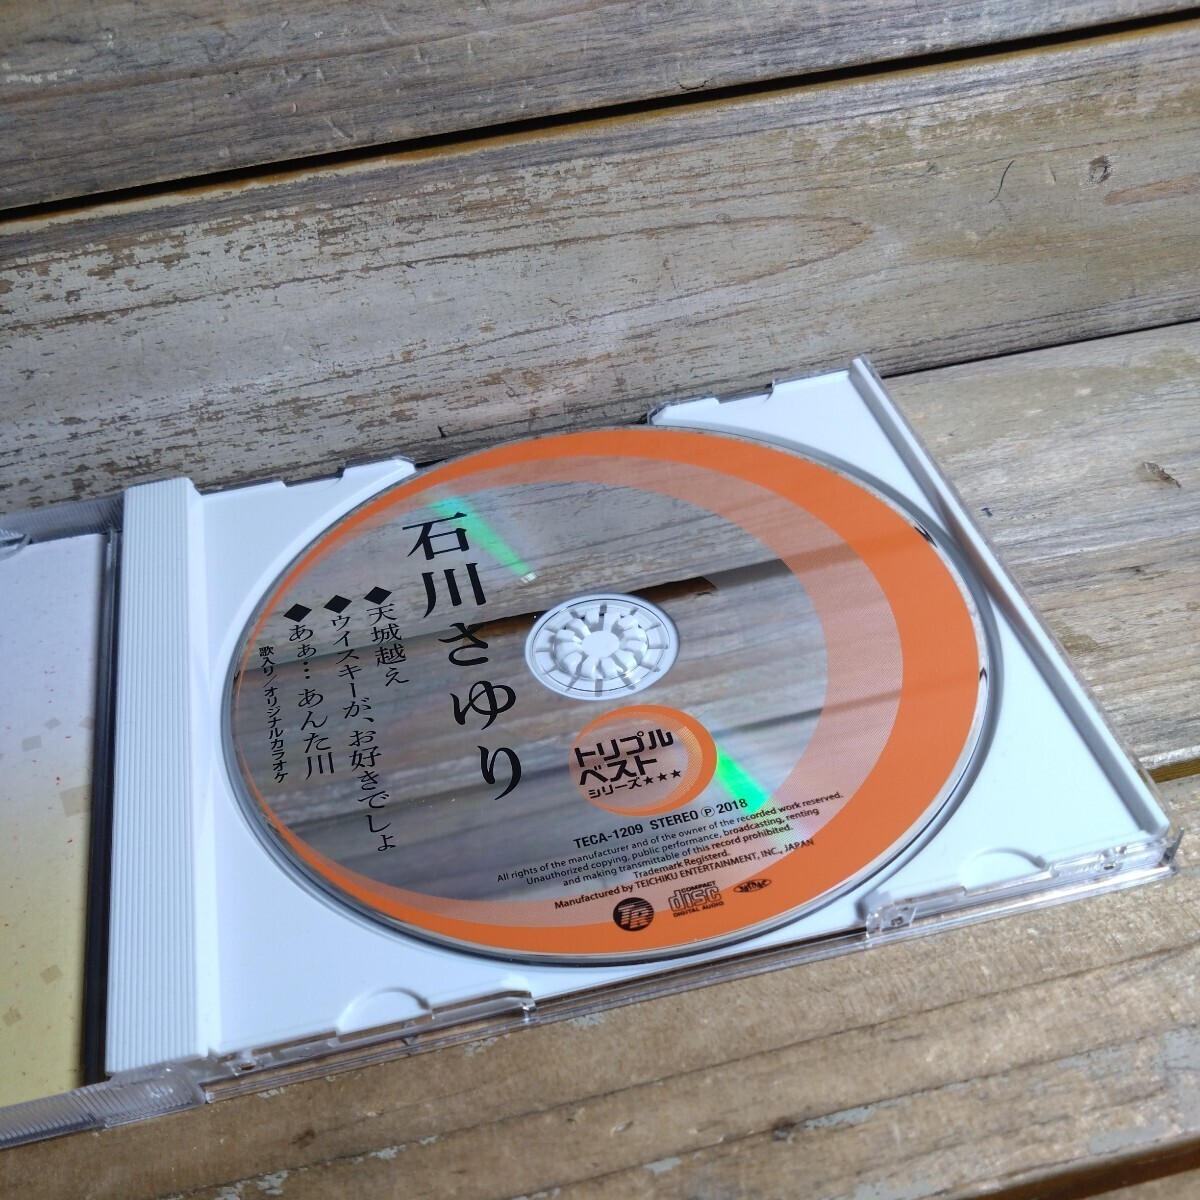 3 トリプルベストシリーズ 石川さゆり② 邦楽 CD 演歌の画像4